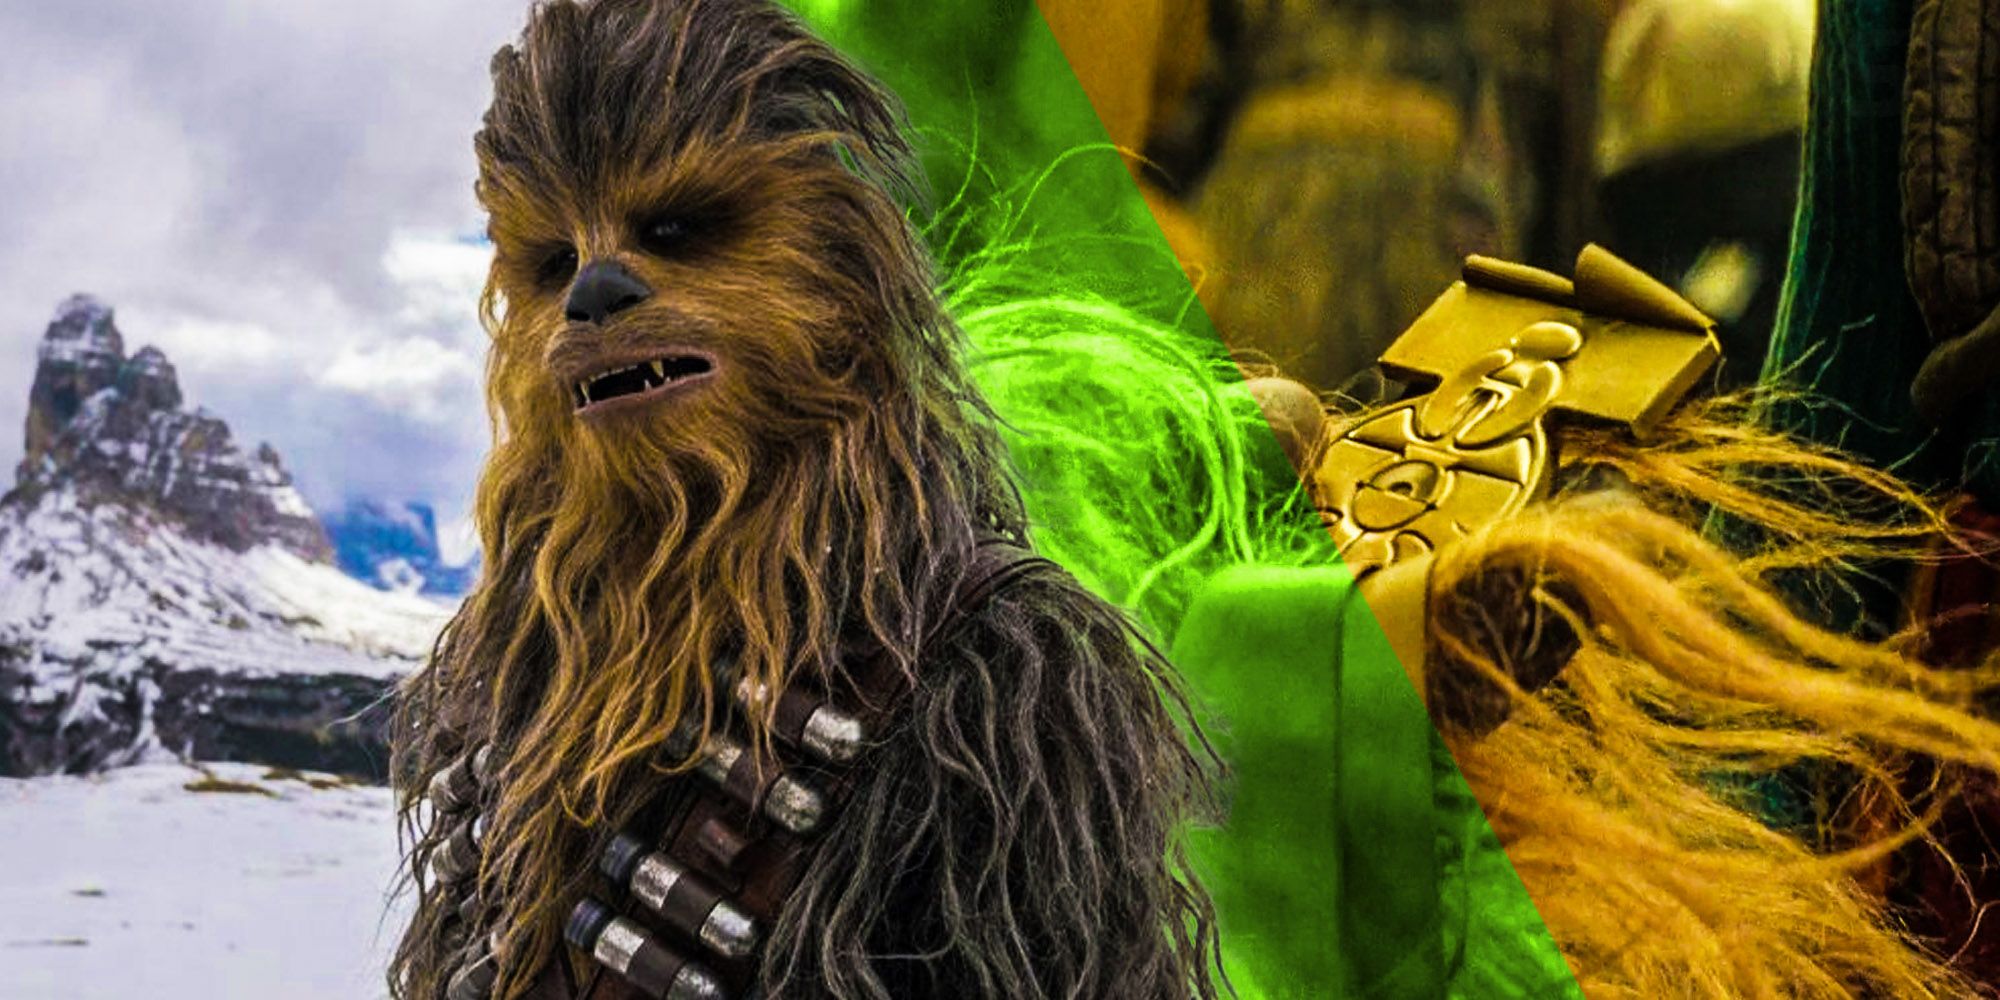 Chewbacca medal star wars rise of skywalker fan service